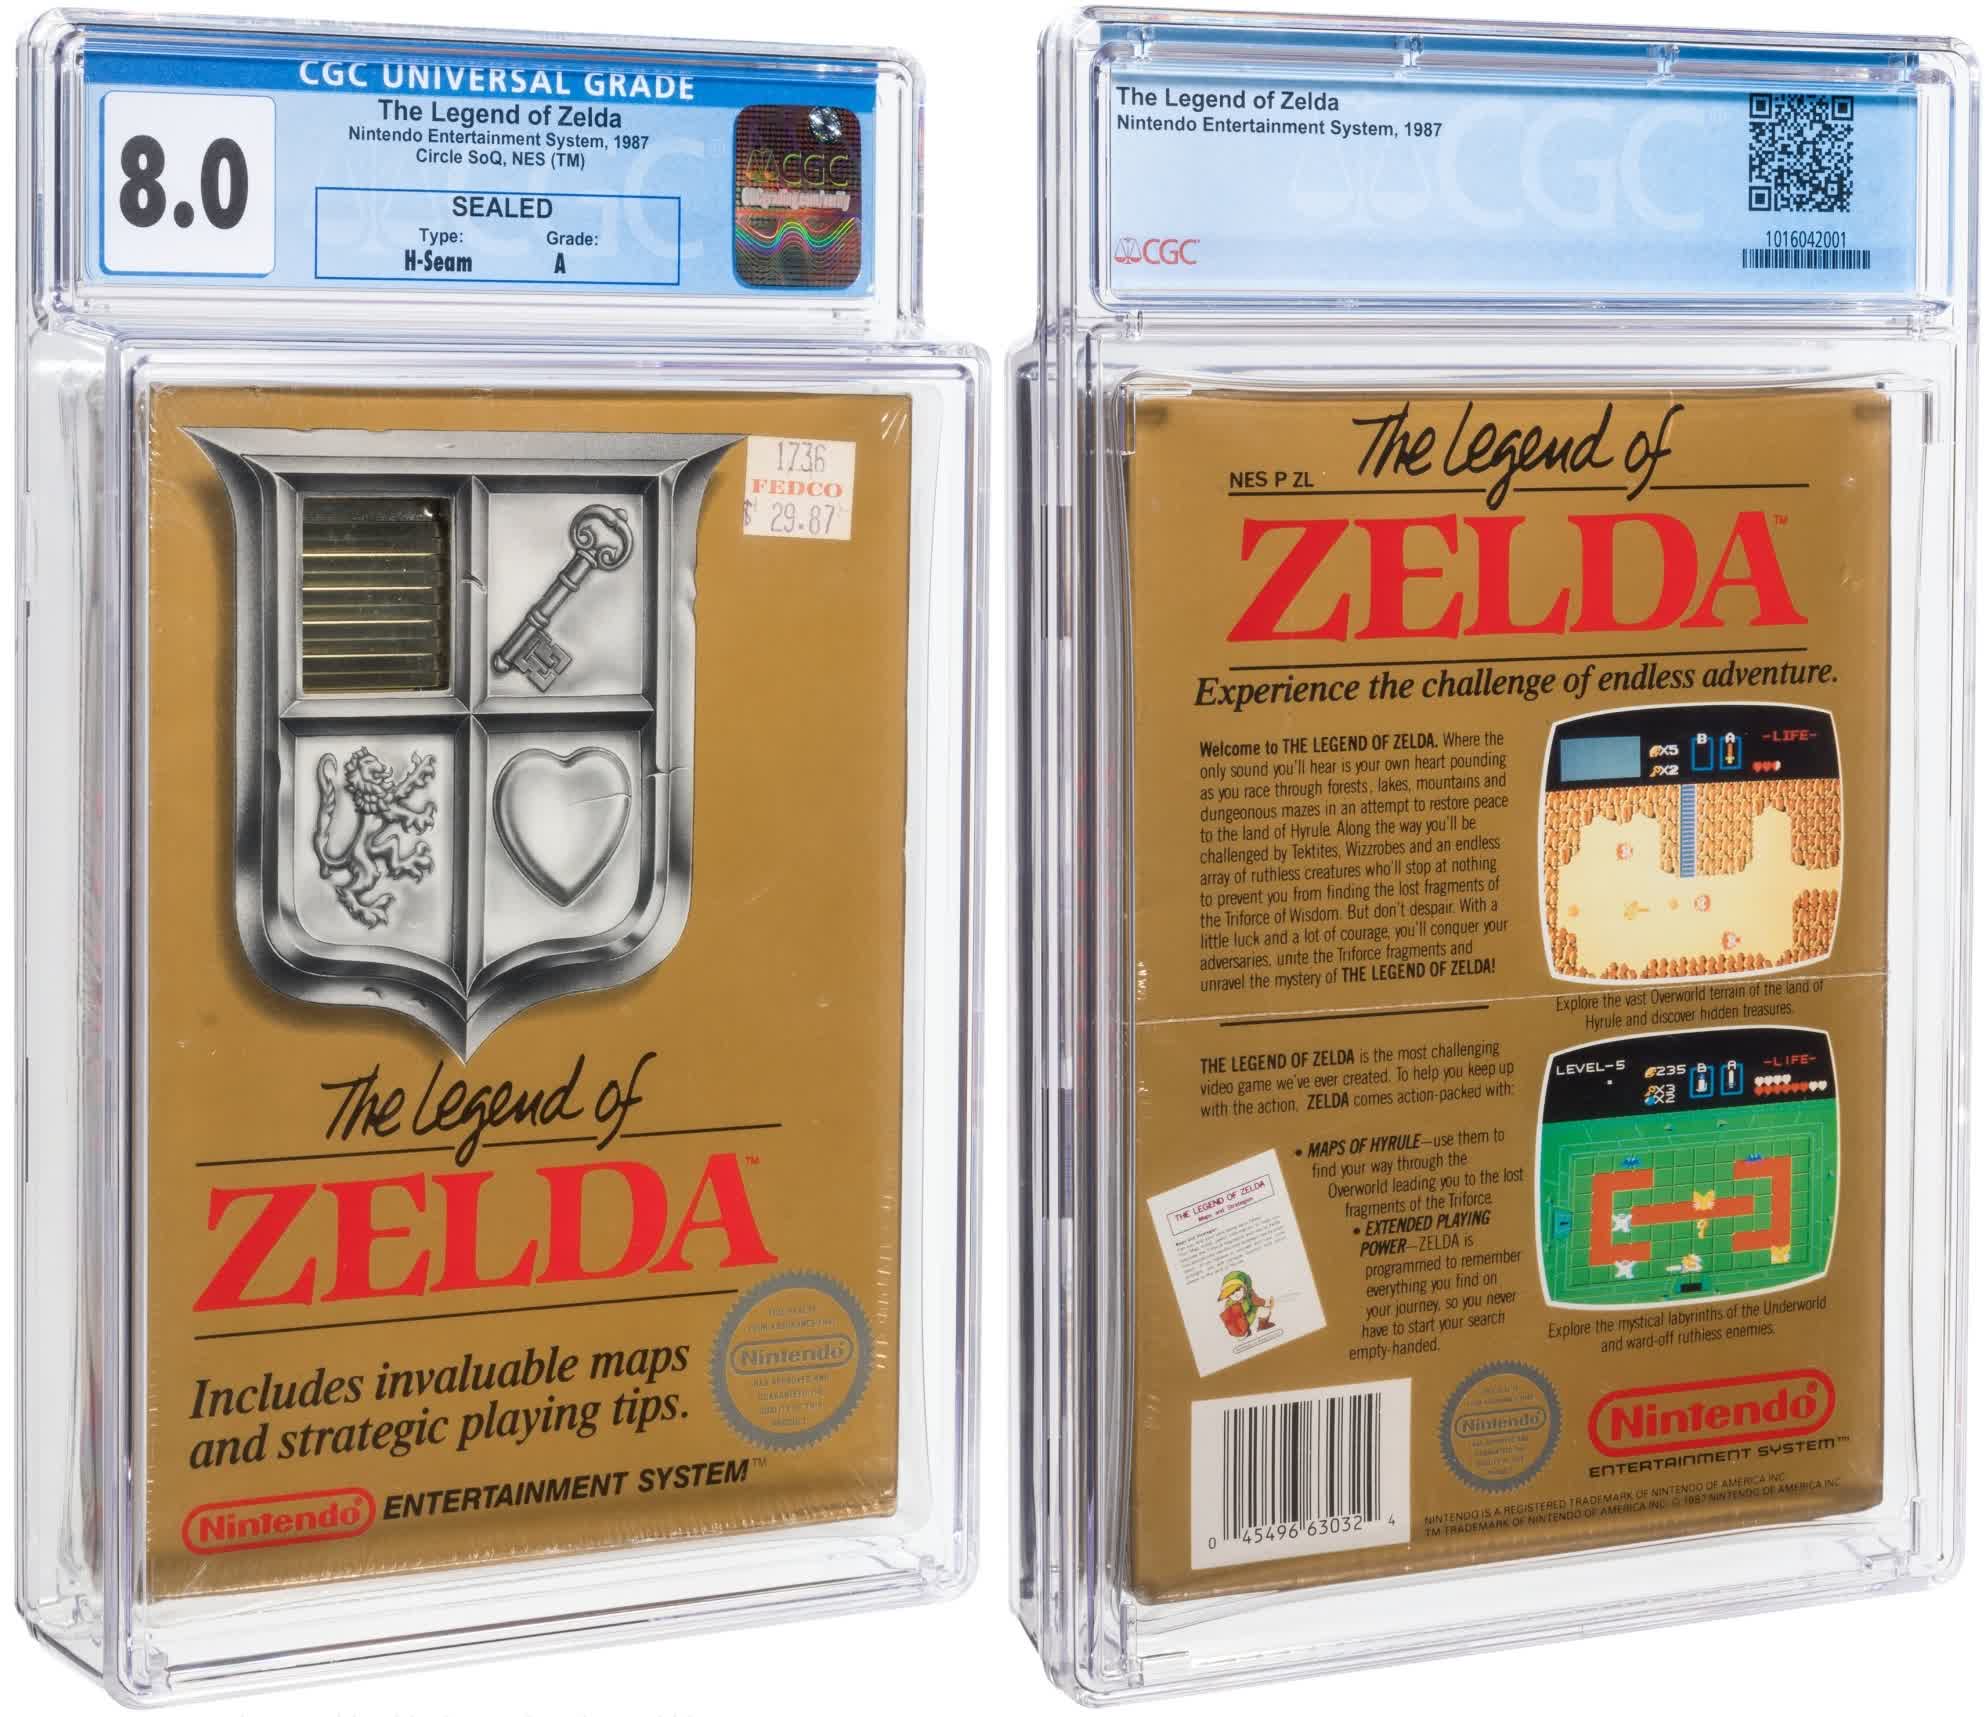 Otra copia extremadamente rara de Zelda va a subasta y podría batir récords